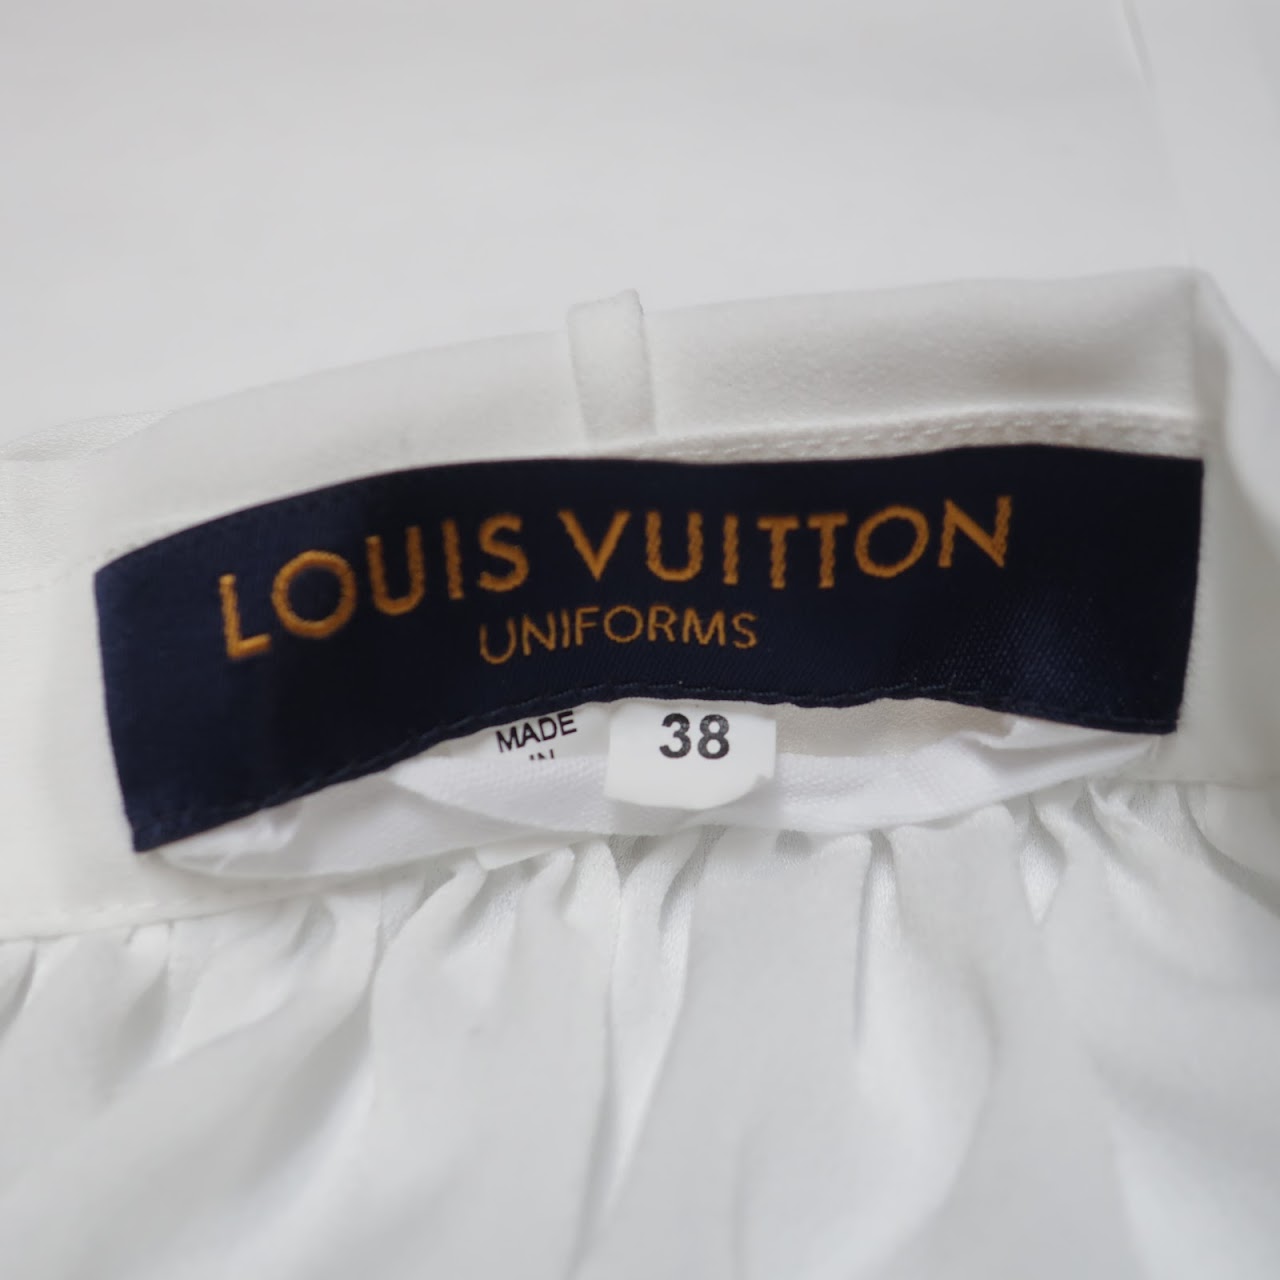 Louis Vuitton Uniforms Blouse